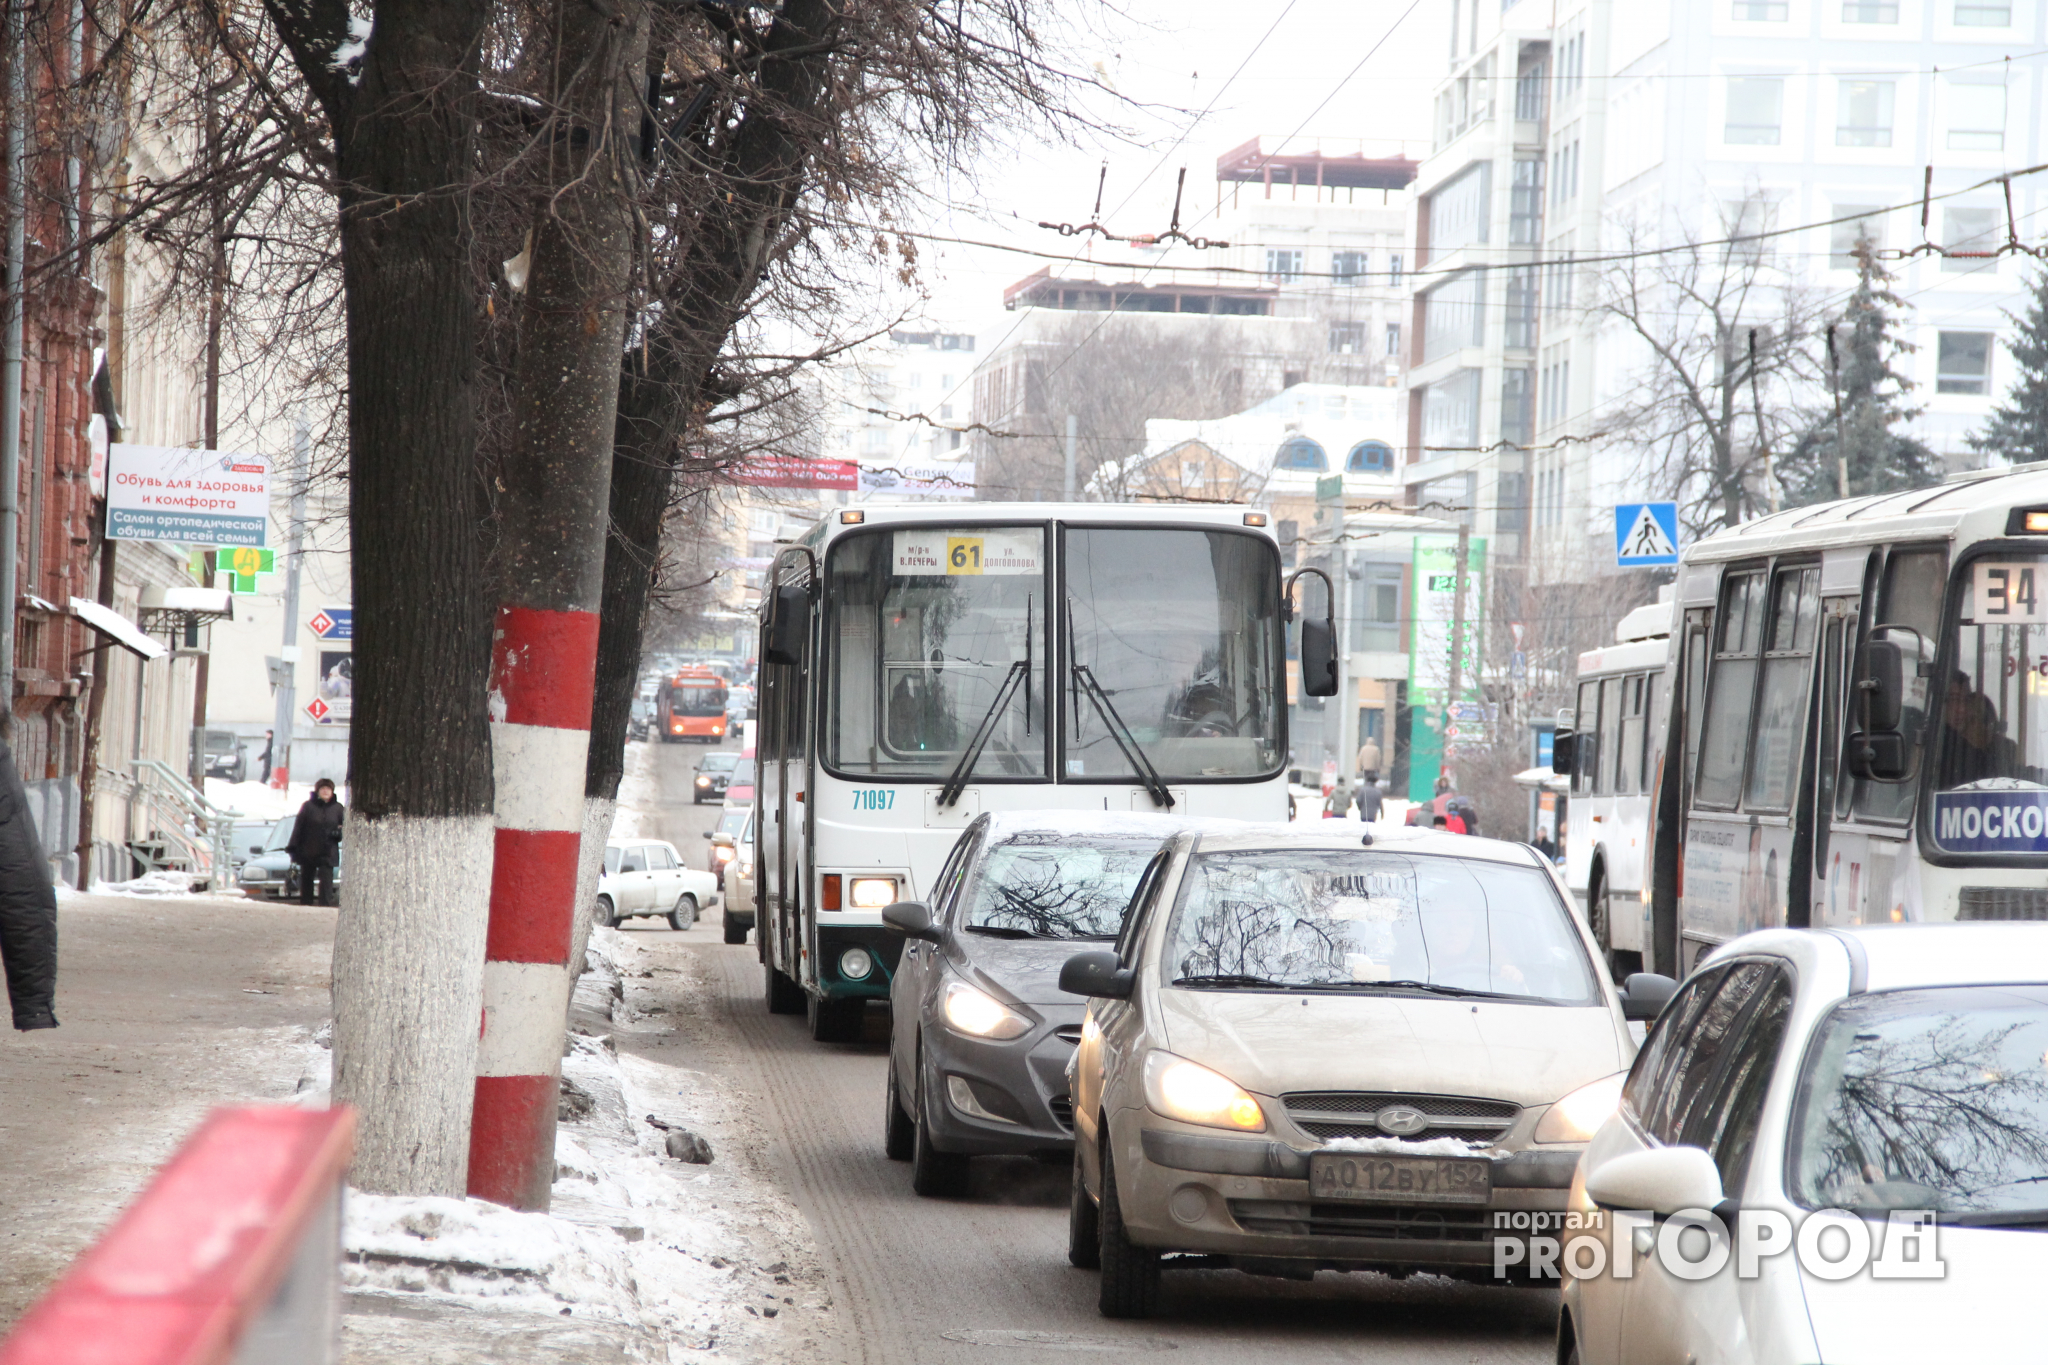 Дополнительные автобусы развезут нижегородцев из центра города 18 марта